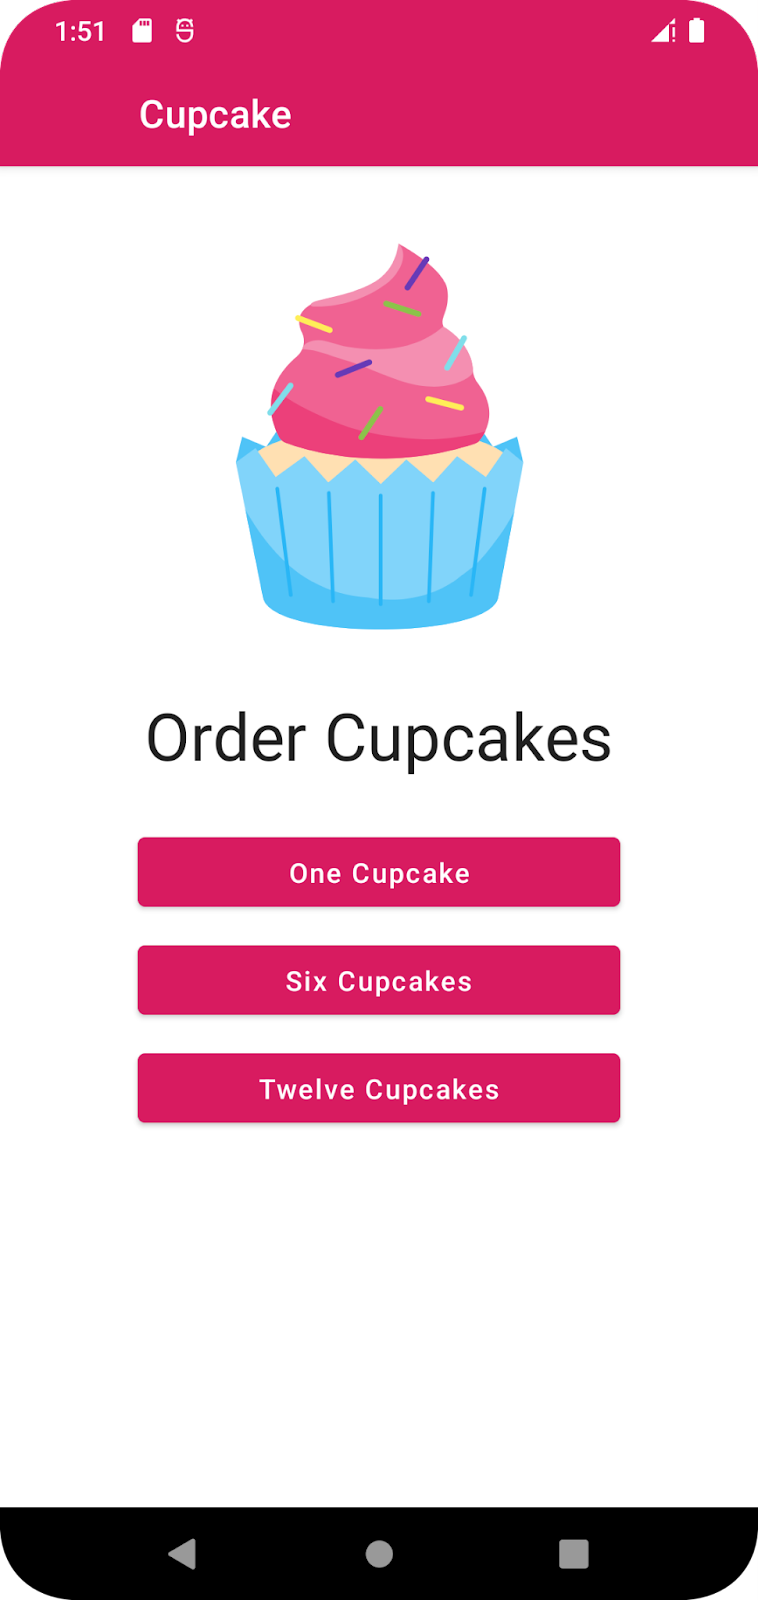 Premier écran de l'application Cupcake proposant des options pour commander un, six ou douze cupcakes.